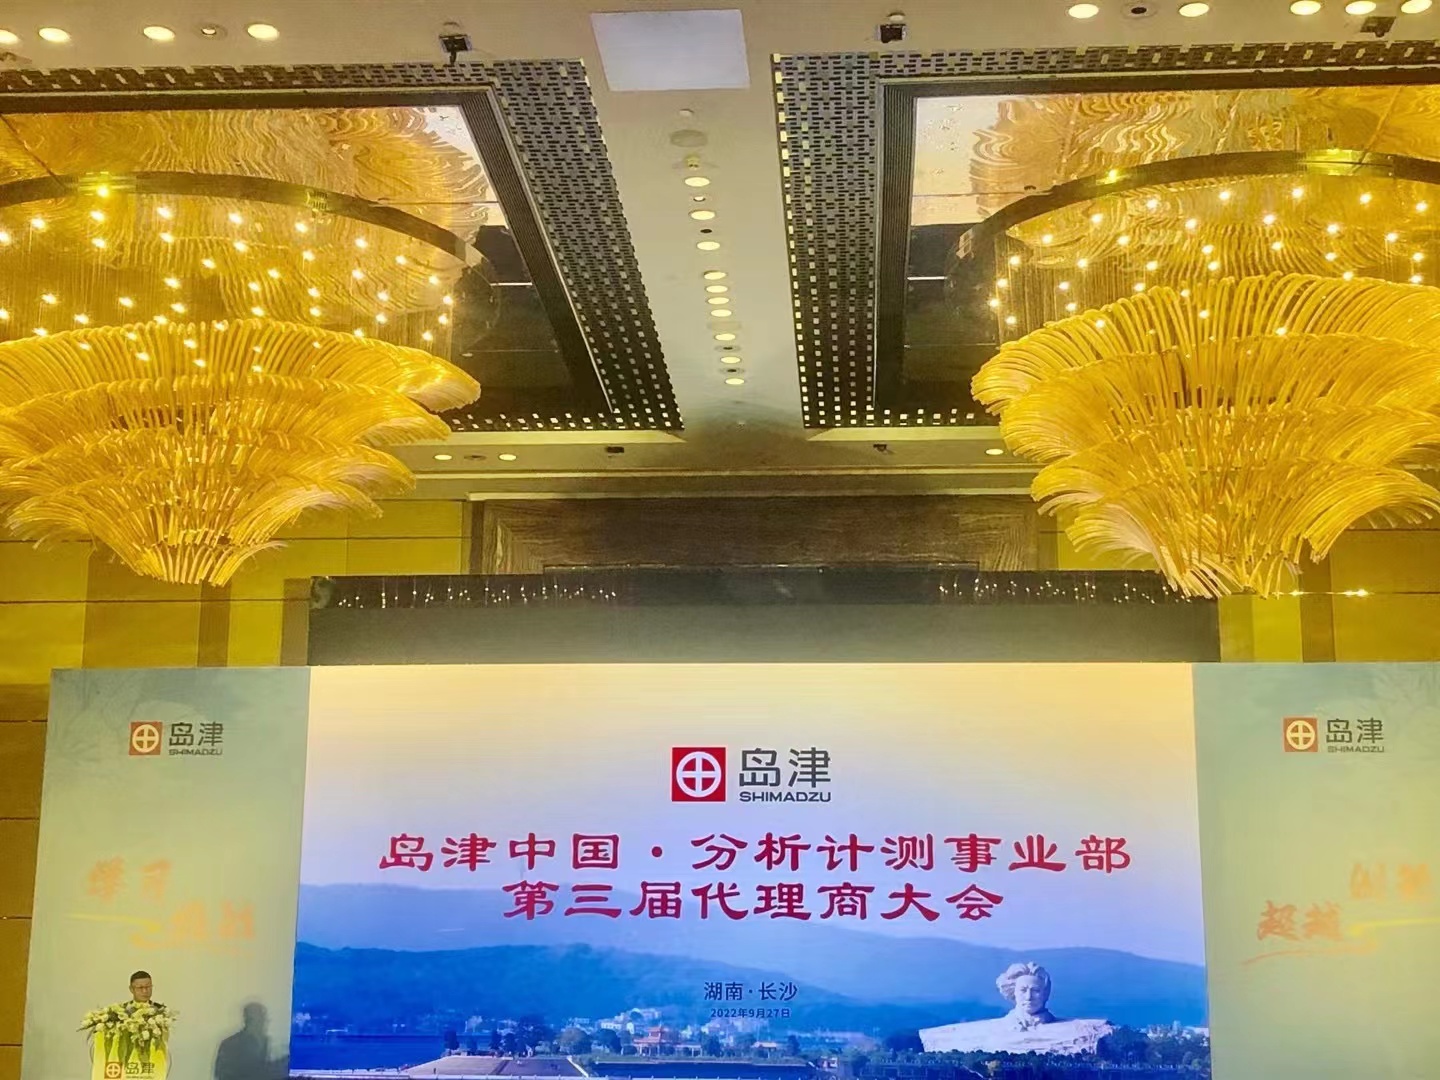 上海百贺受邀参加岛津中国·分析计测事业部第三届代理商大会